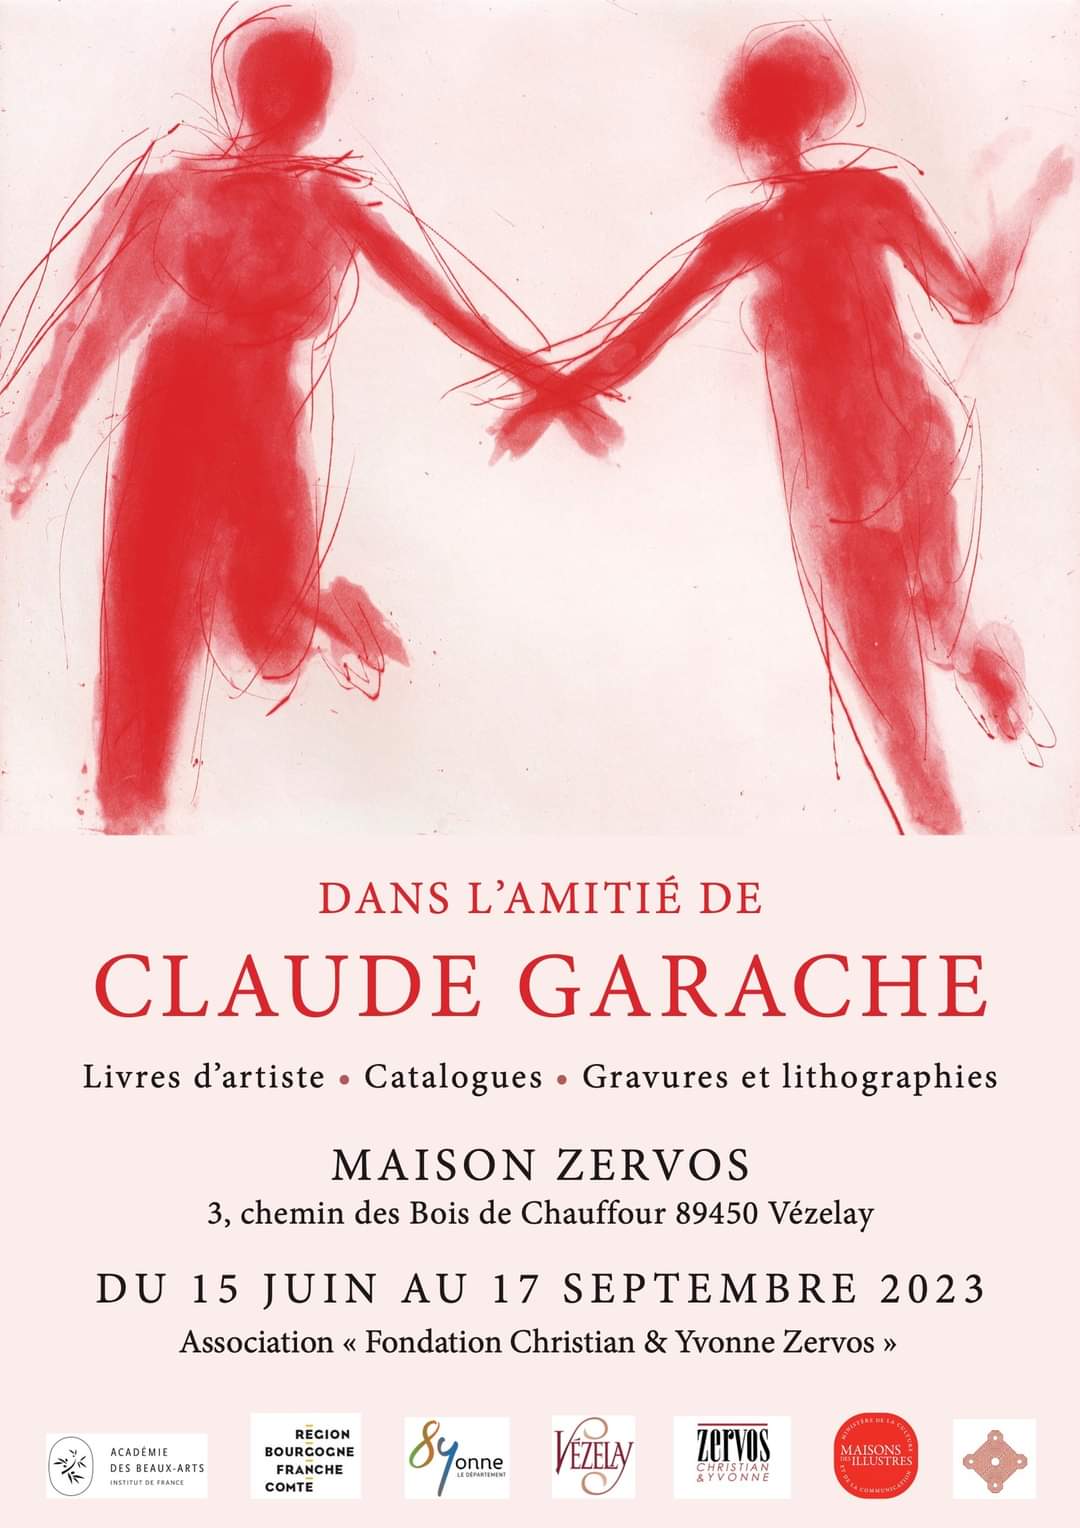 Exposition "Dans l'amitié de Claude Garache", Maison Zervos, Vézelay